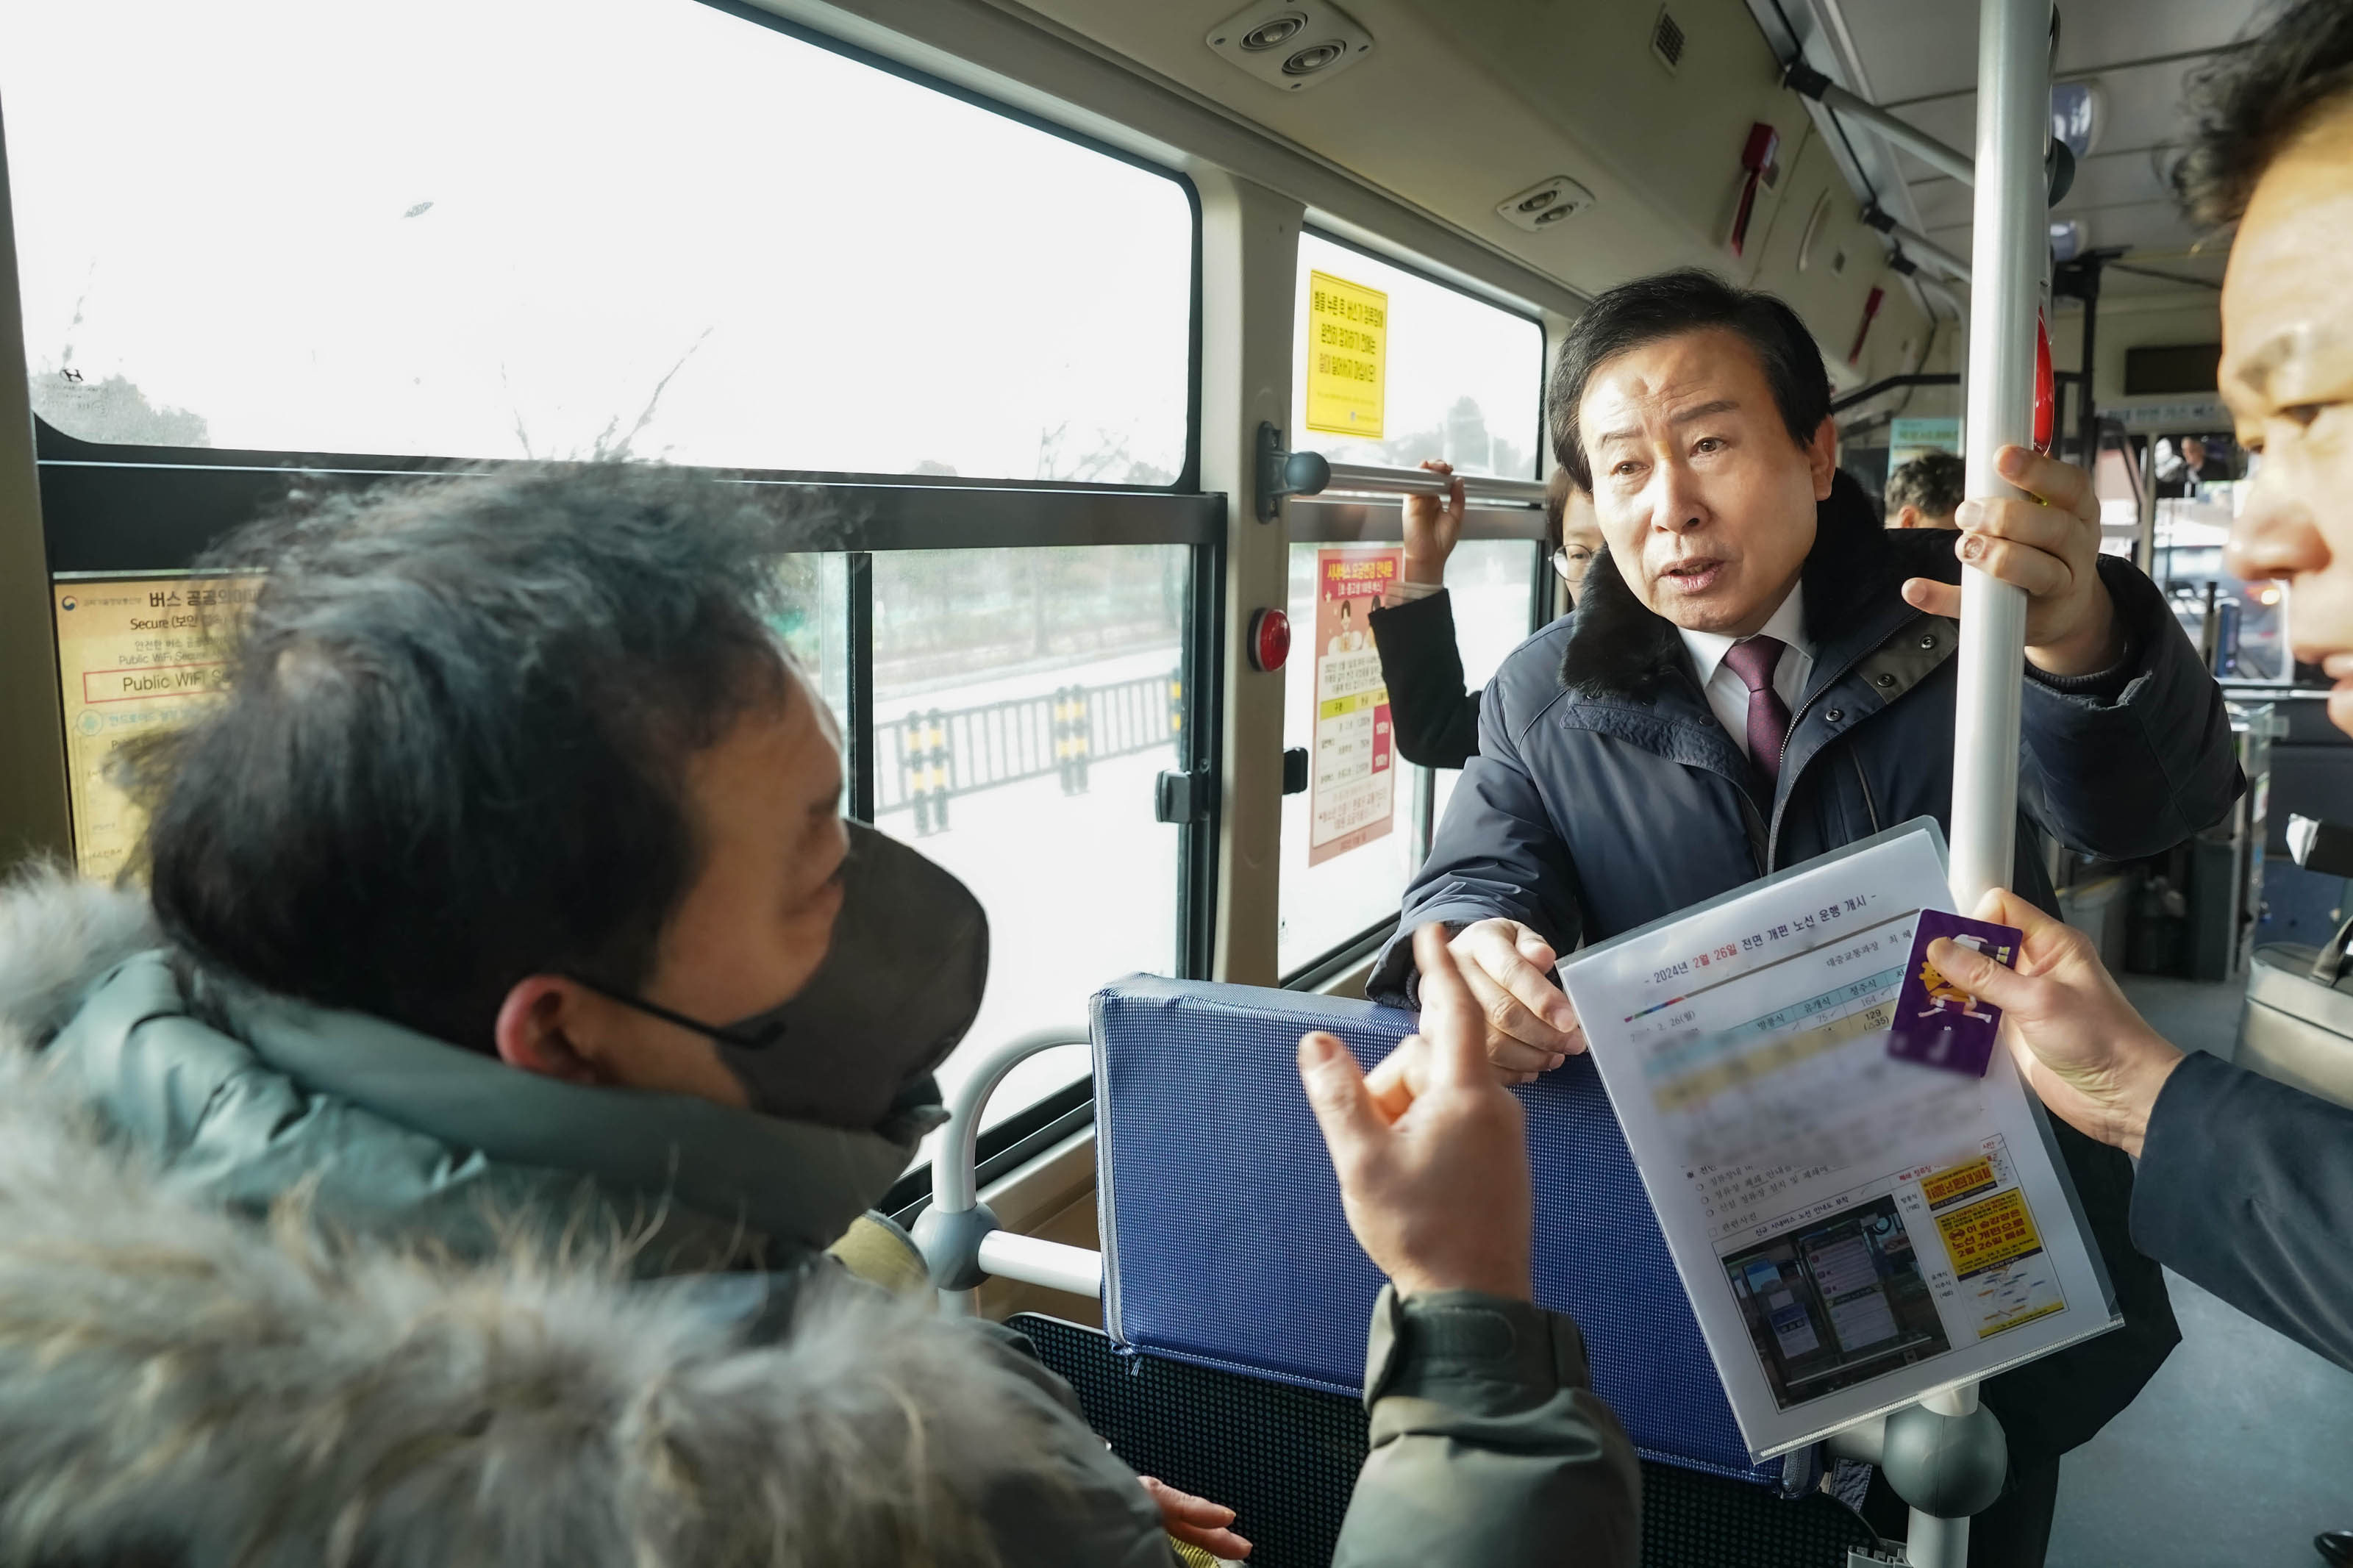 버스 좌석에 앉아 짙은 회색 마스크를 착영하고 카키색 패딩을 입은 시민과 이야기를 나누는 박홍률 시장과 의원. 의원은 옆모슾만 보이고, 손에는 노선 개편과 관련된 자료와 보라색 교통카드를 쥐고 있다.